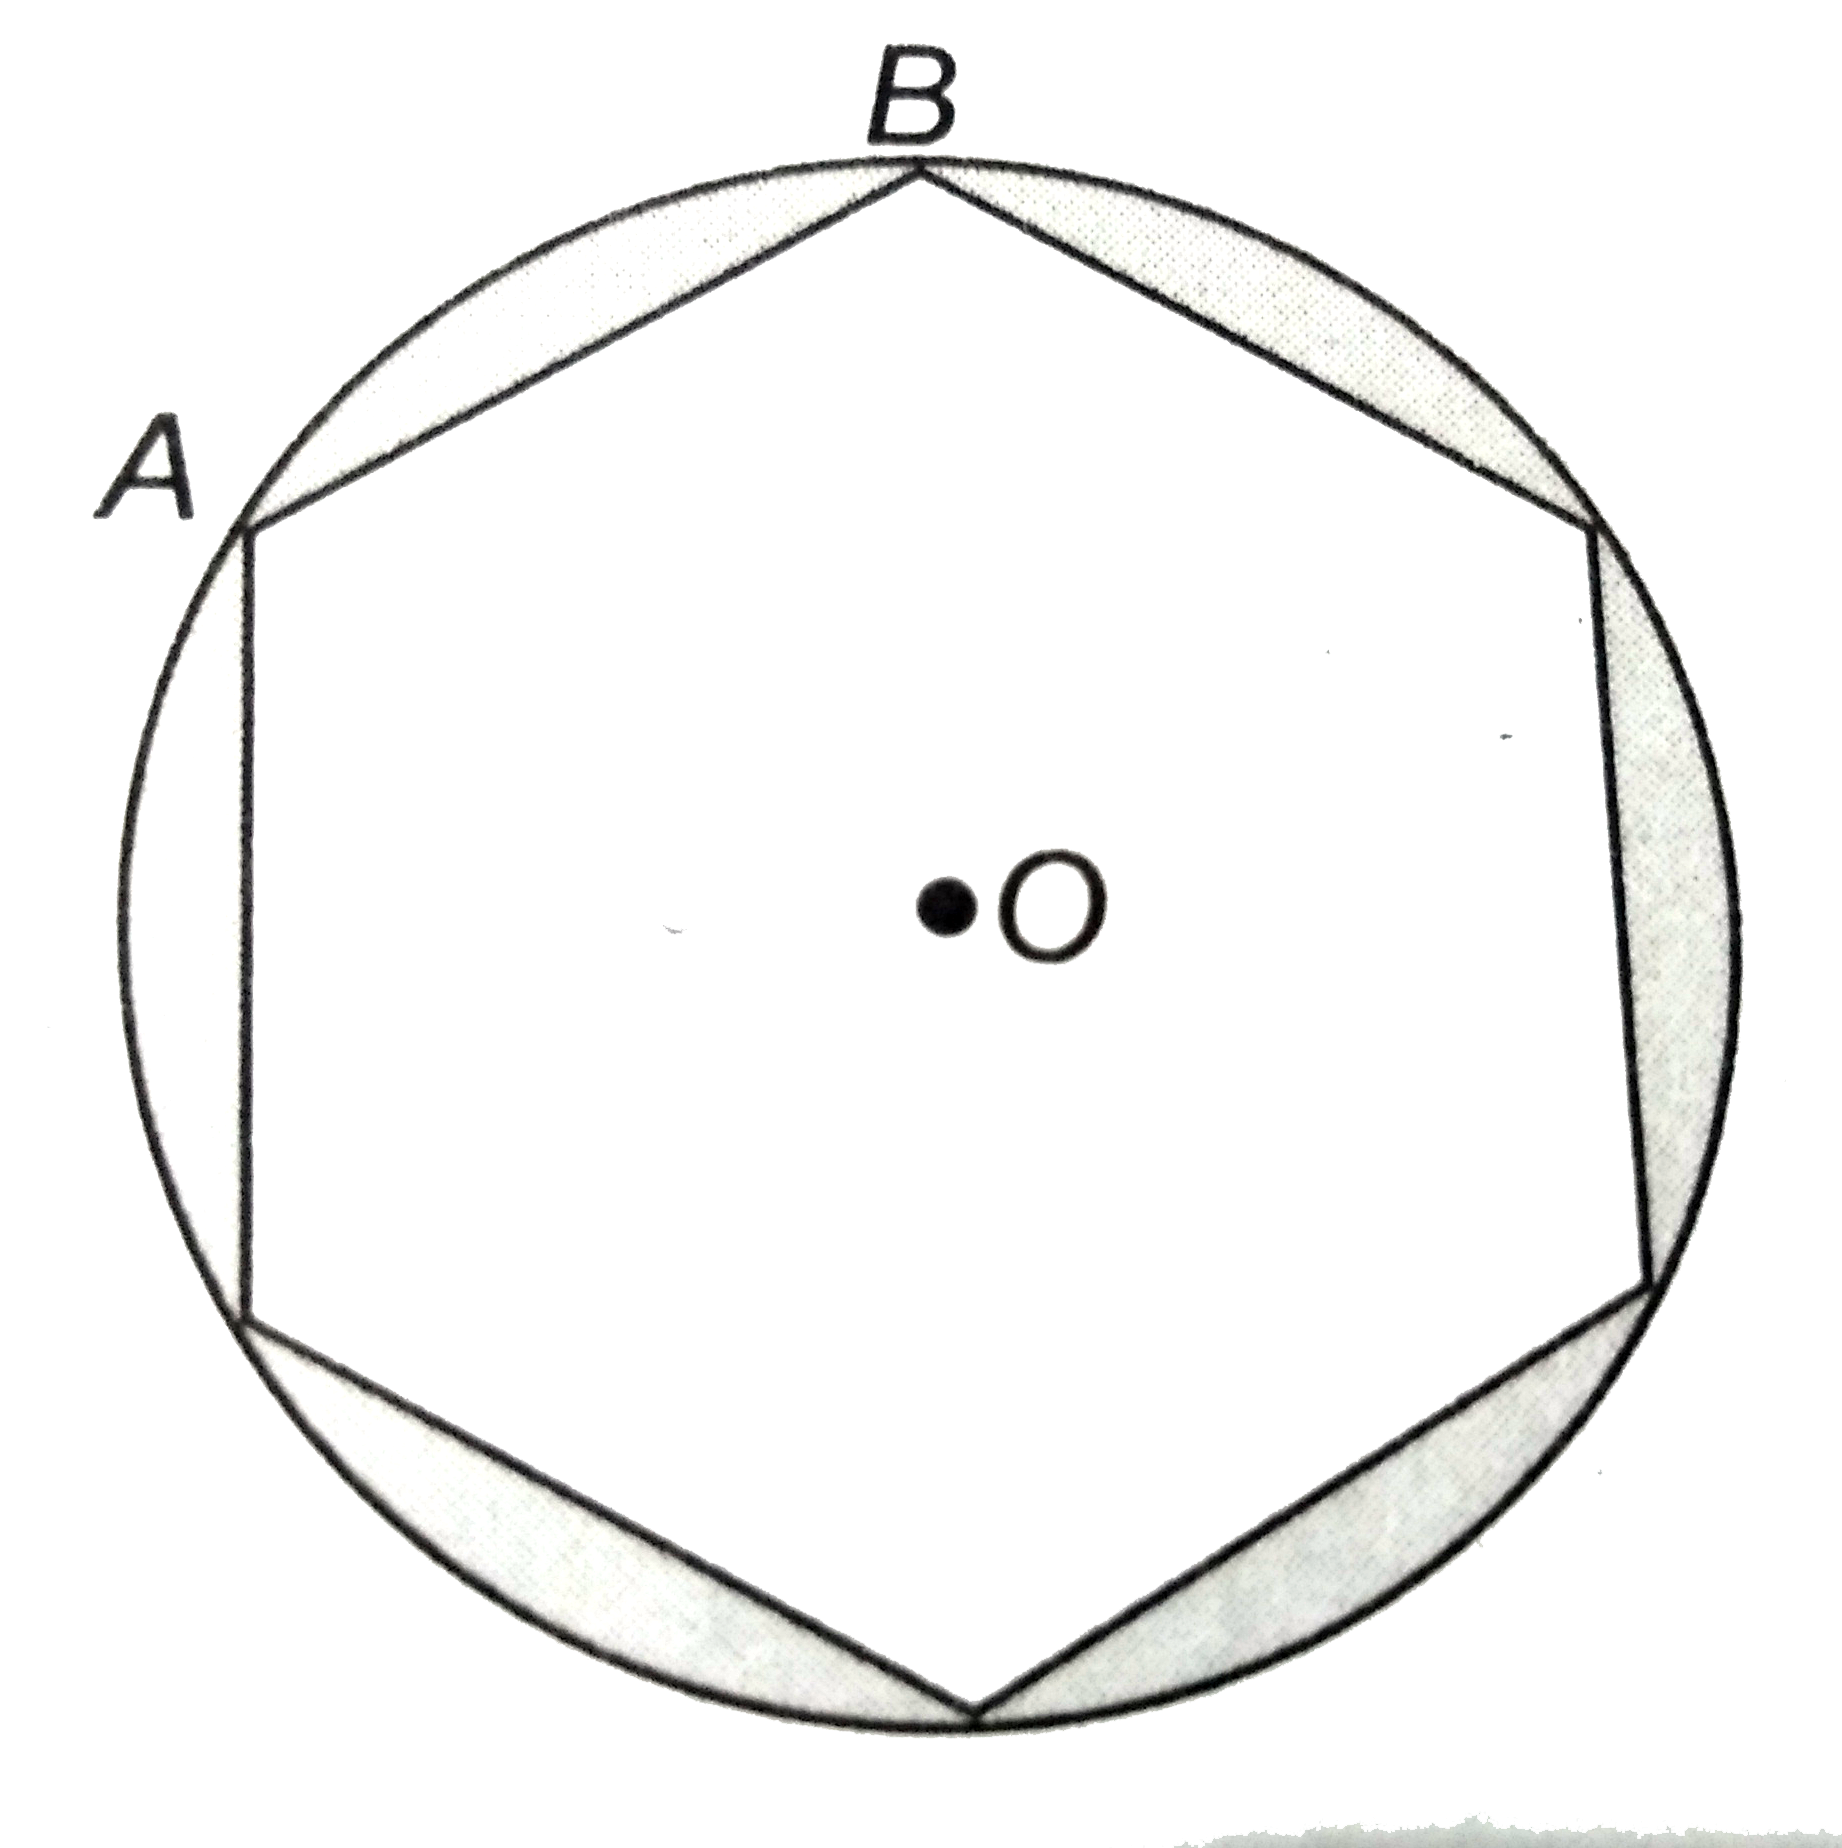 एक वृत्ताकार  मेजपोश  पर चित्रानुसार  6  बराबर  डिजाइन  बनाये  गये है । यदि वृत्त की त्रिज्या  35  सेमी है  तो  डिजाइन  का कुल  क्षेत्रफल  ज्ञात कीजिए ।      (sqrt3 = 1.732   और pi = 3.14    का प्रयोग  करें )